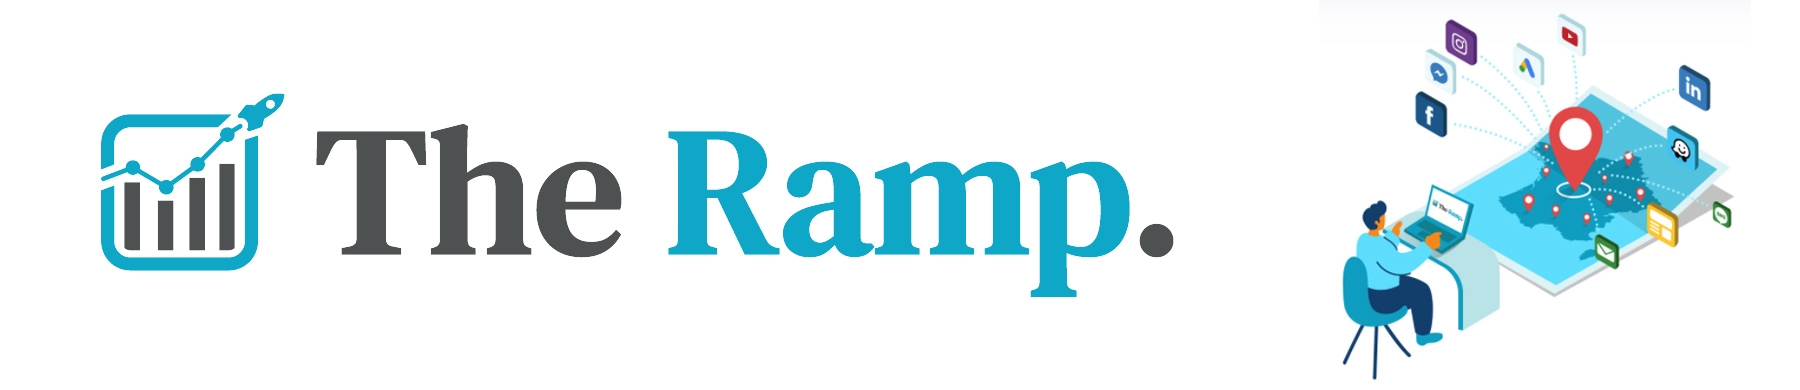 Bannière The Ramp